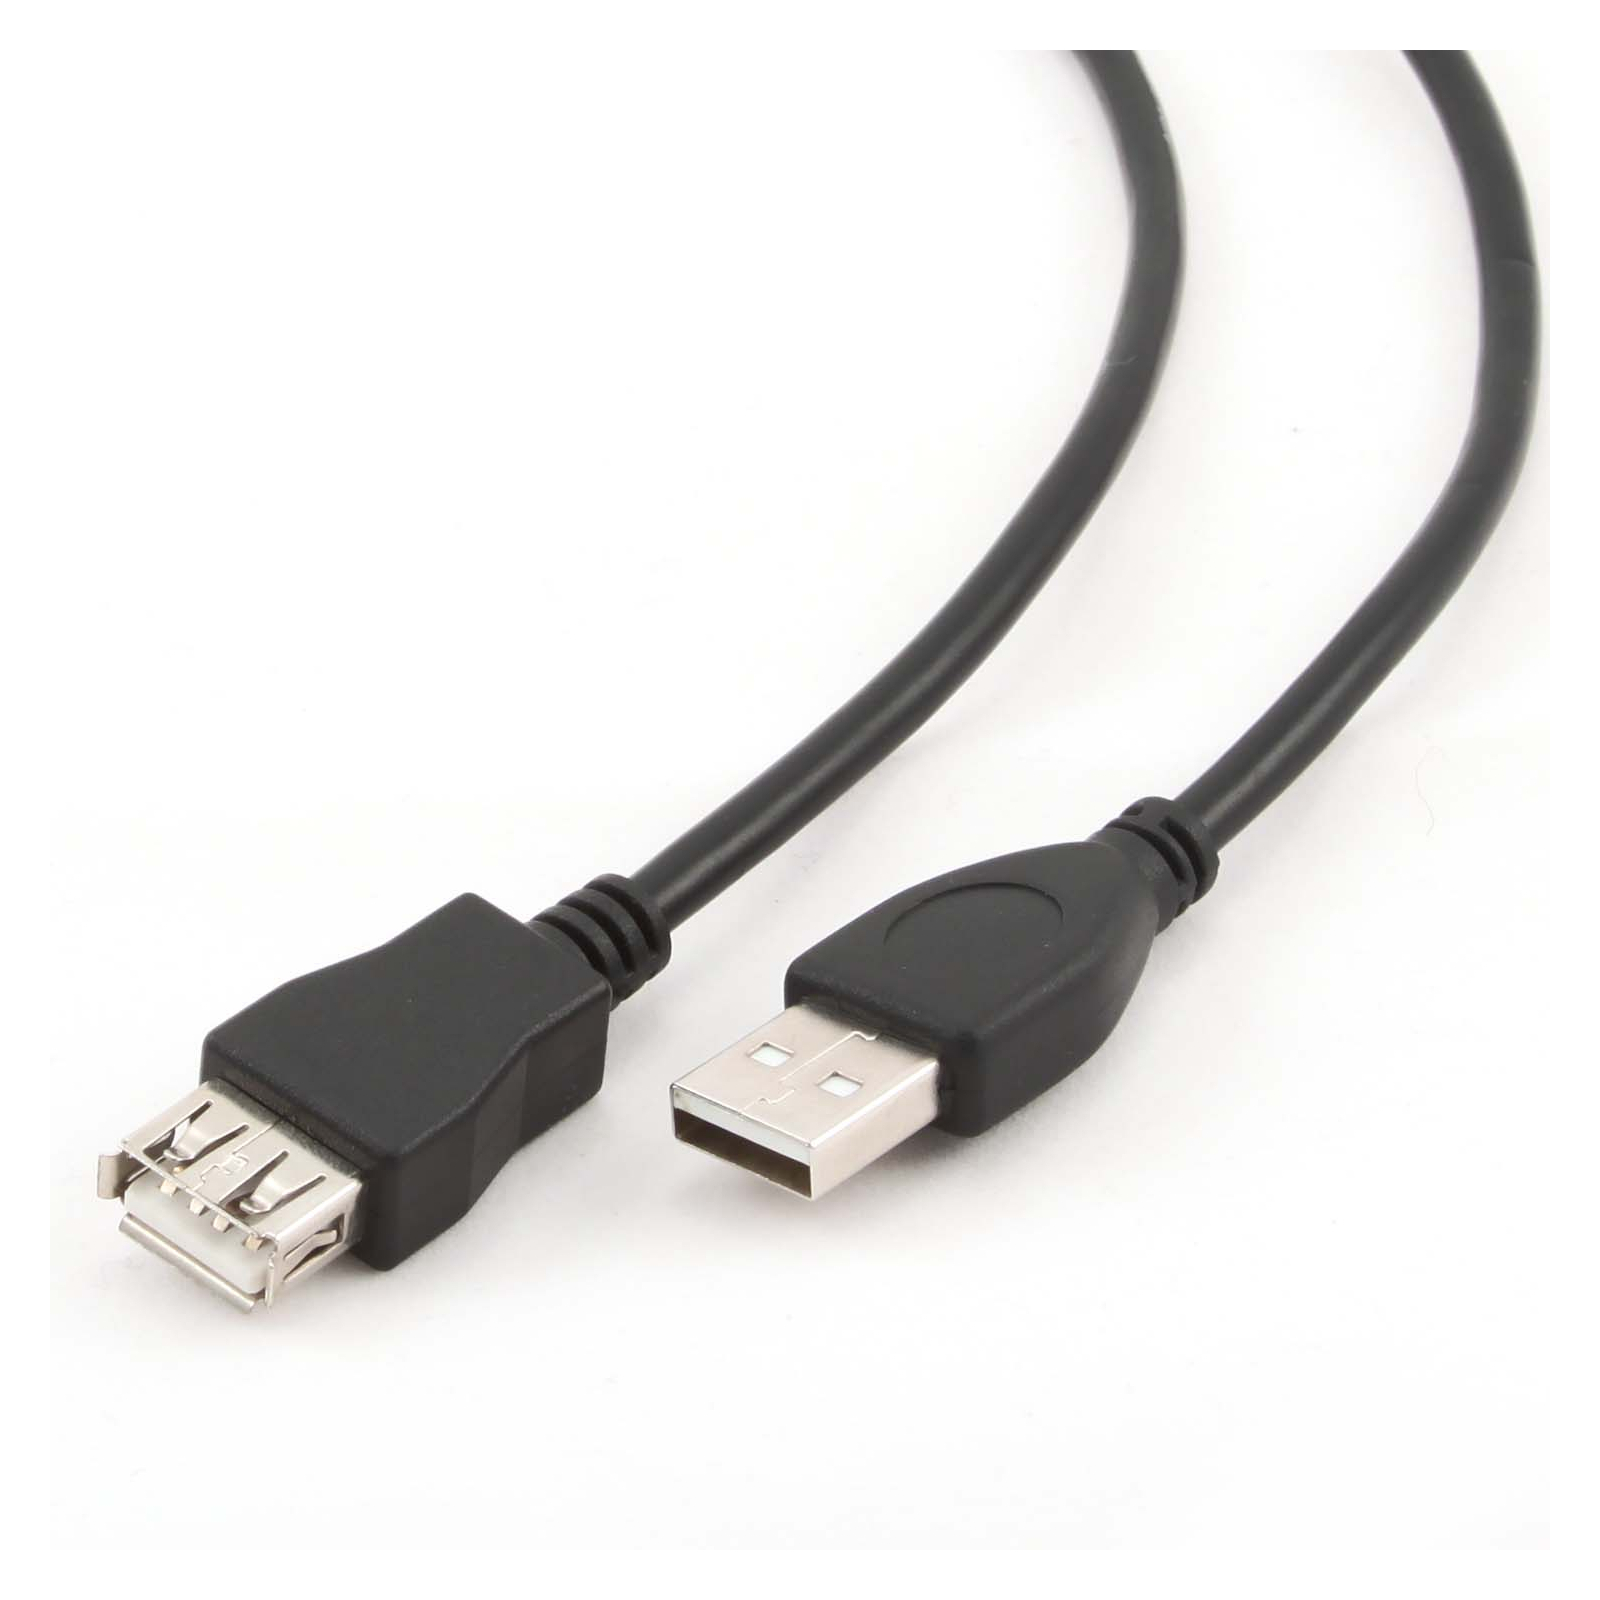 Дата кабель USB 2.0 AM/AF 4.5m Cablexpert (CCP-USB2-AMAF-15C) изображение 2